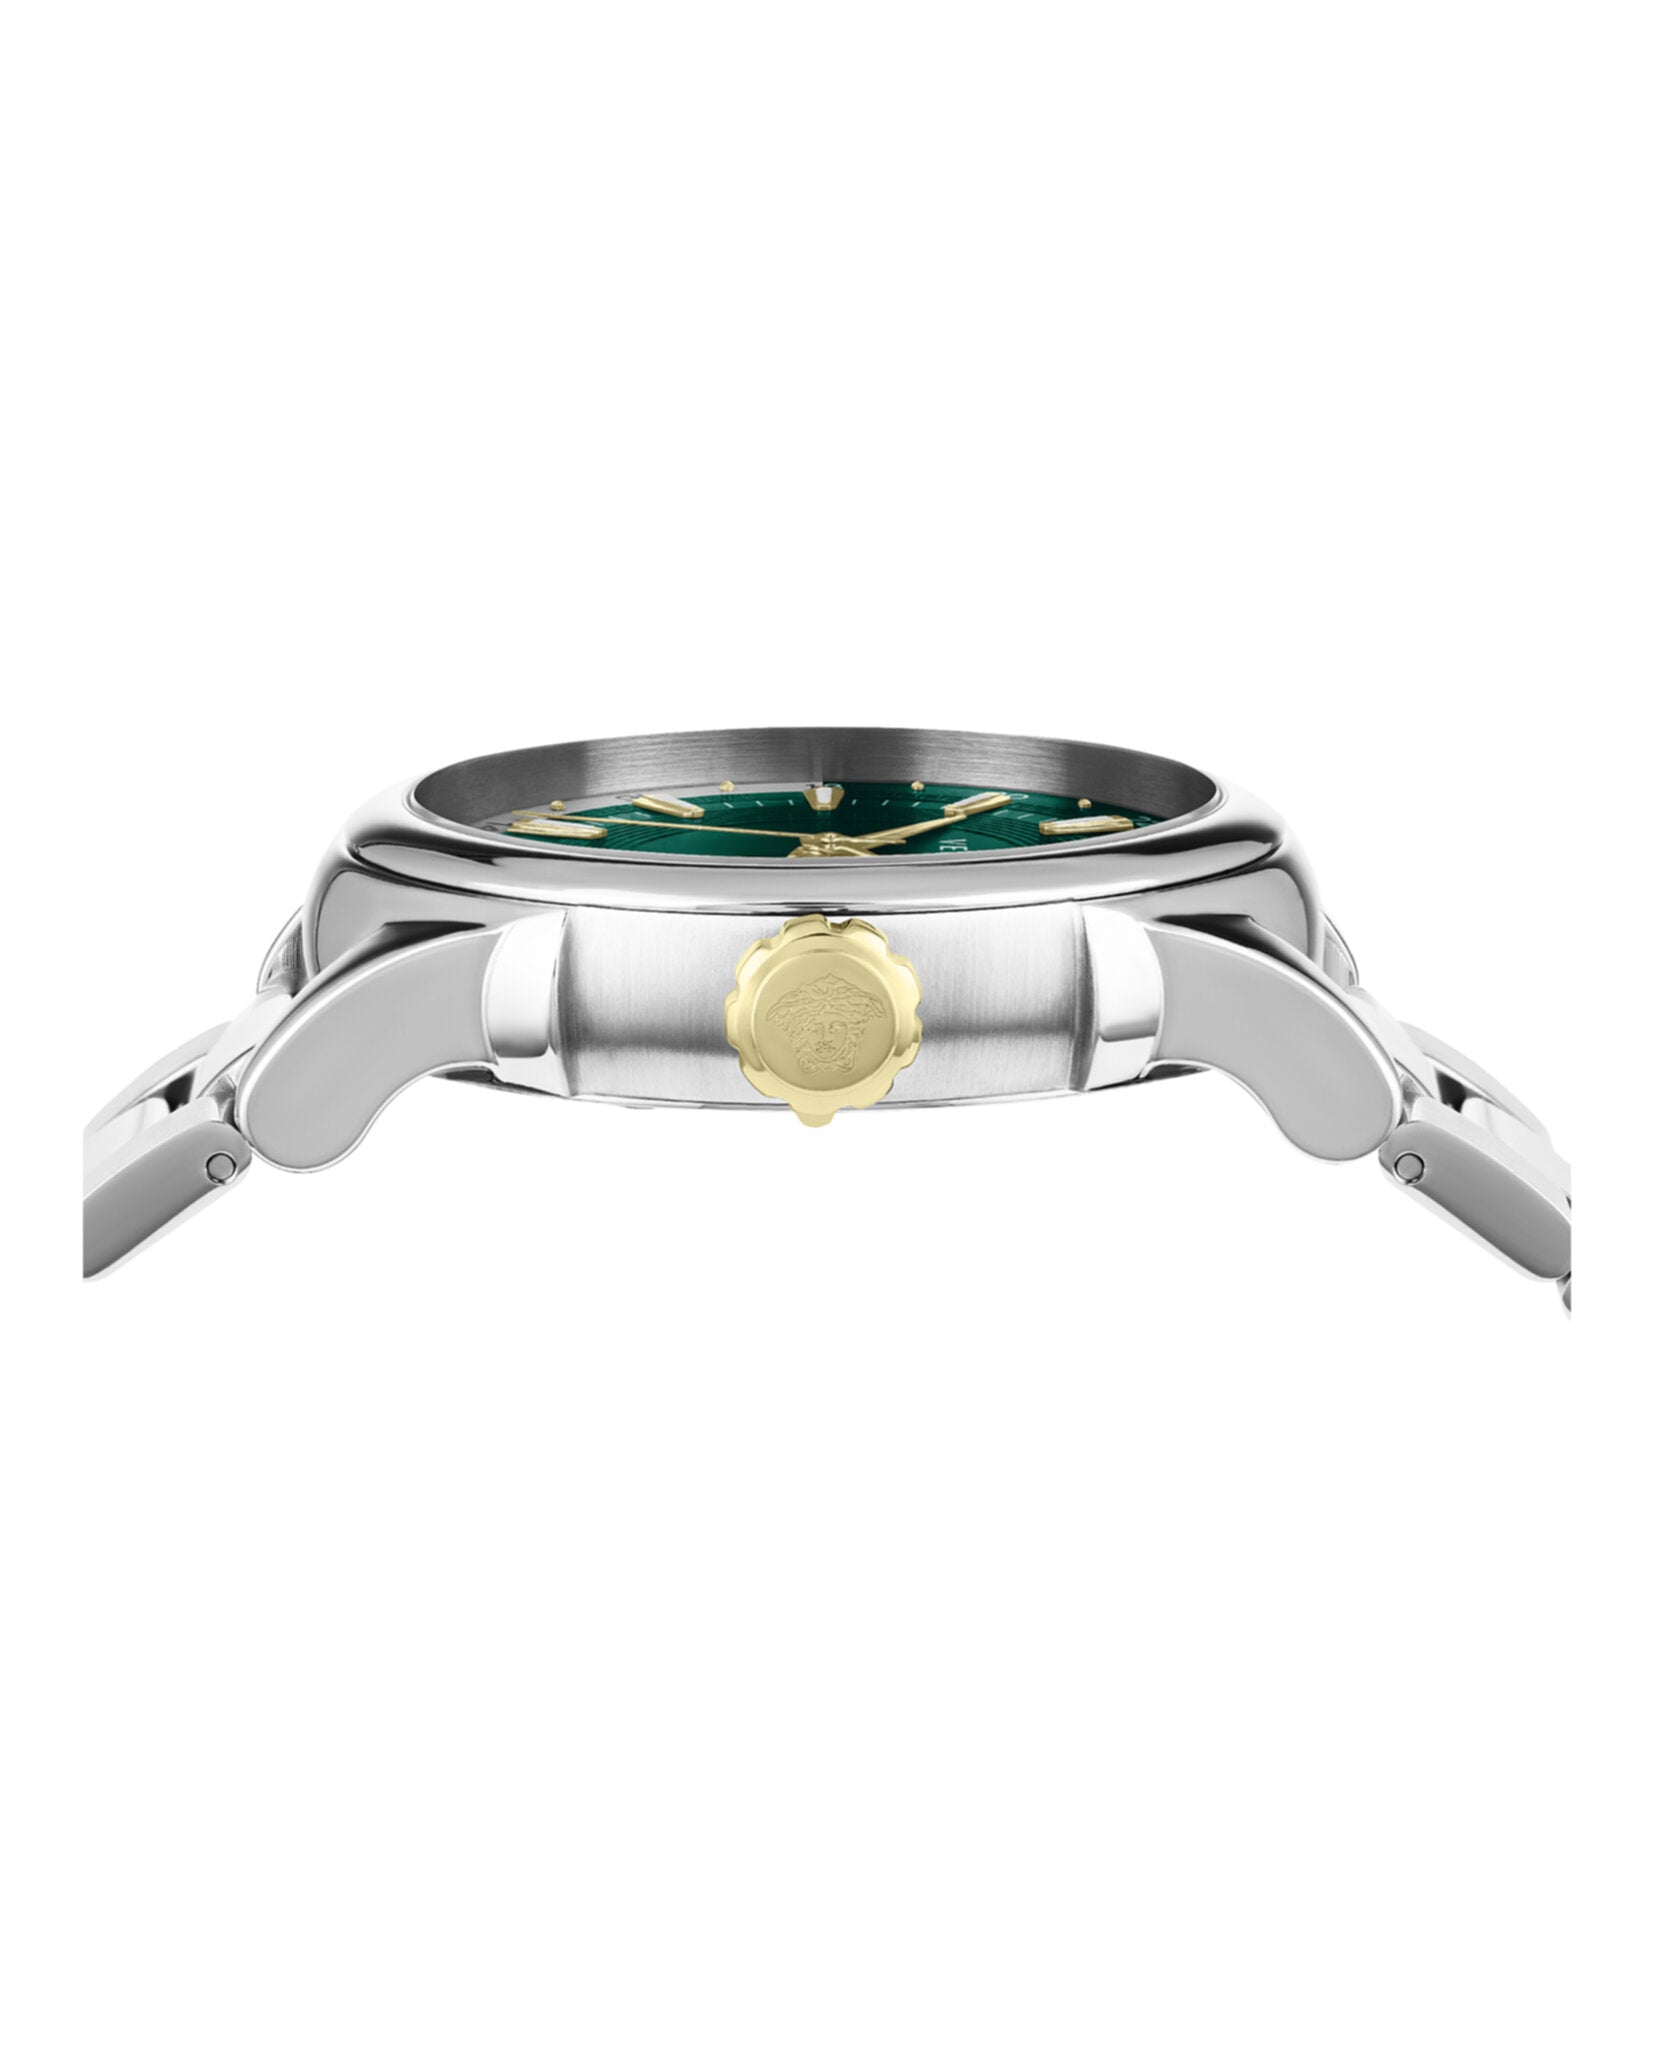 GMT Vintage Bracelet Watch